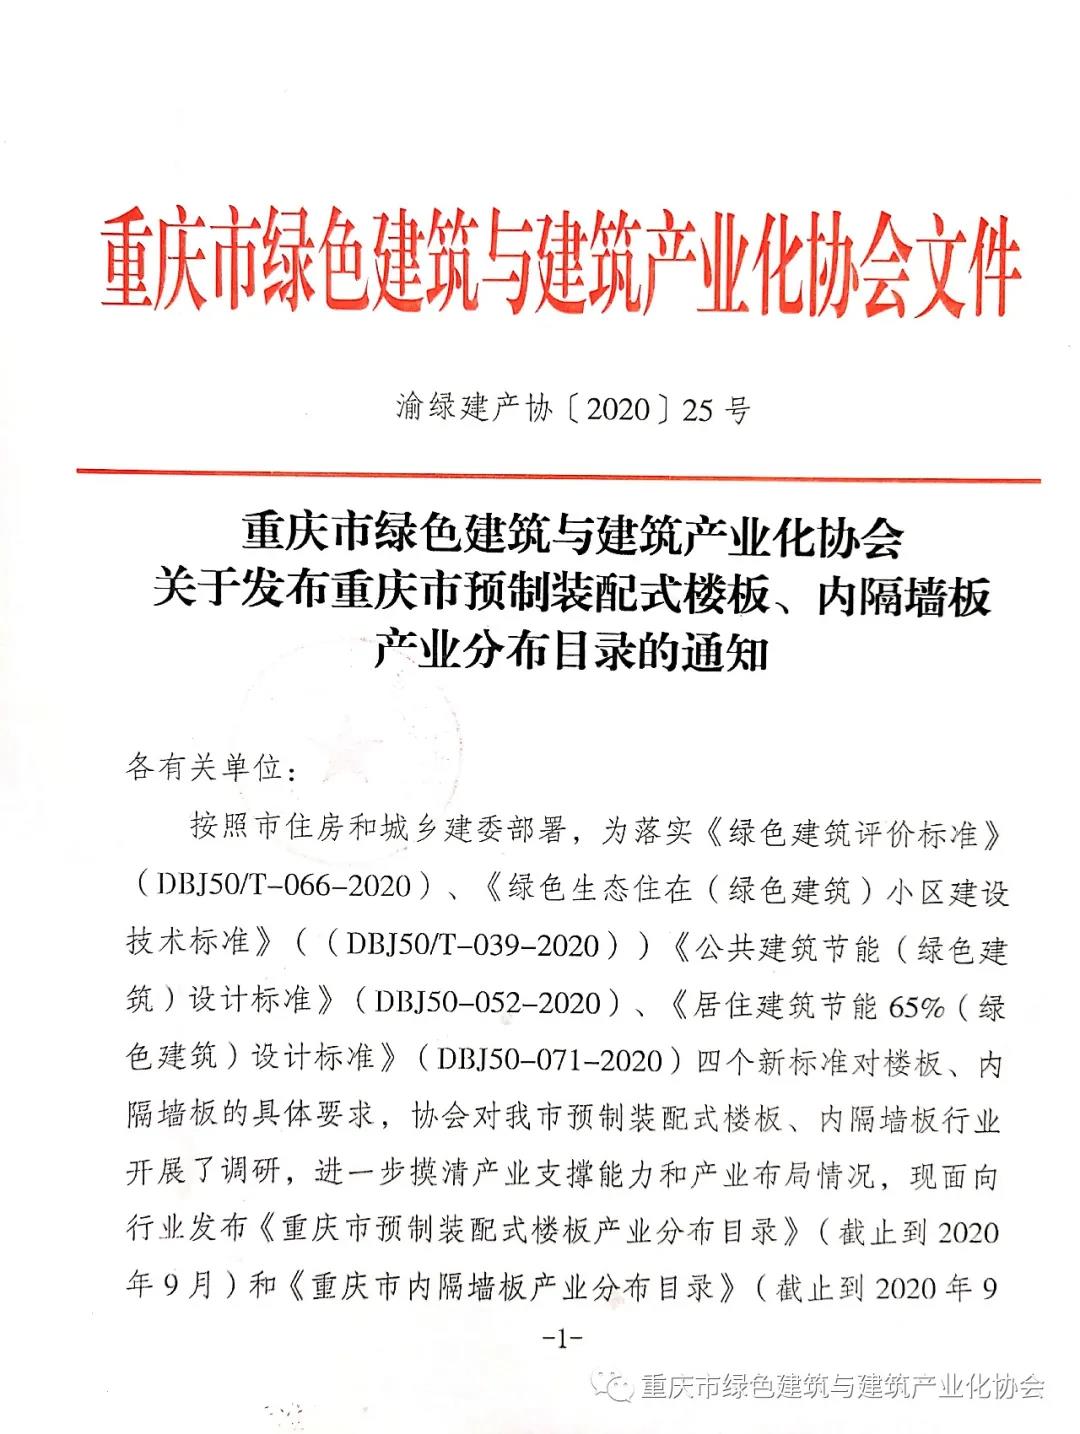 镁晶产品列入重庆市预制装配式楼板、内隔墙板产业分布目录